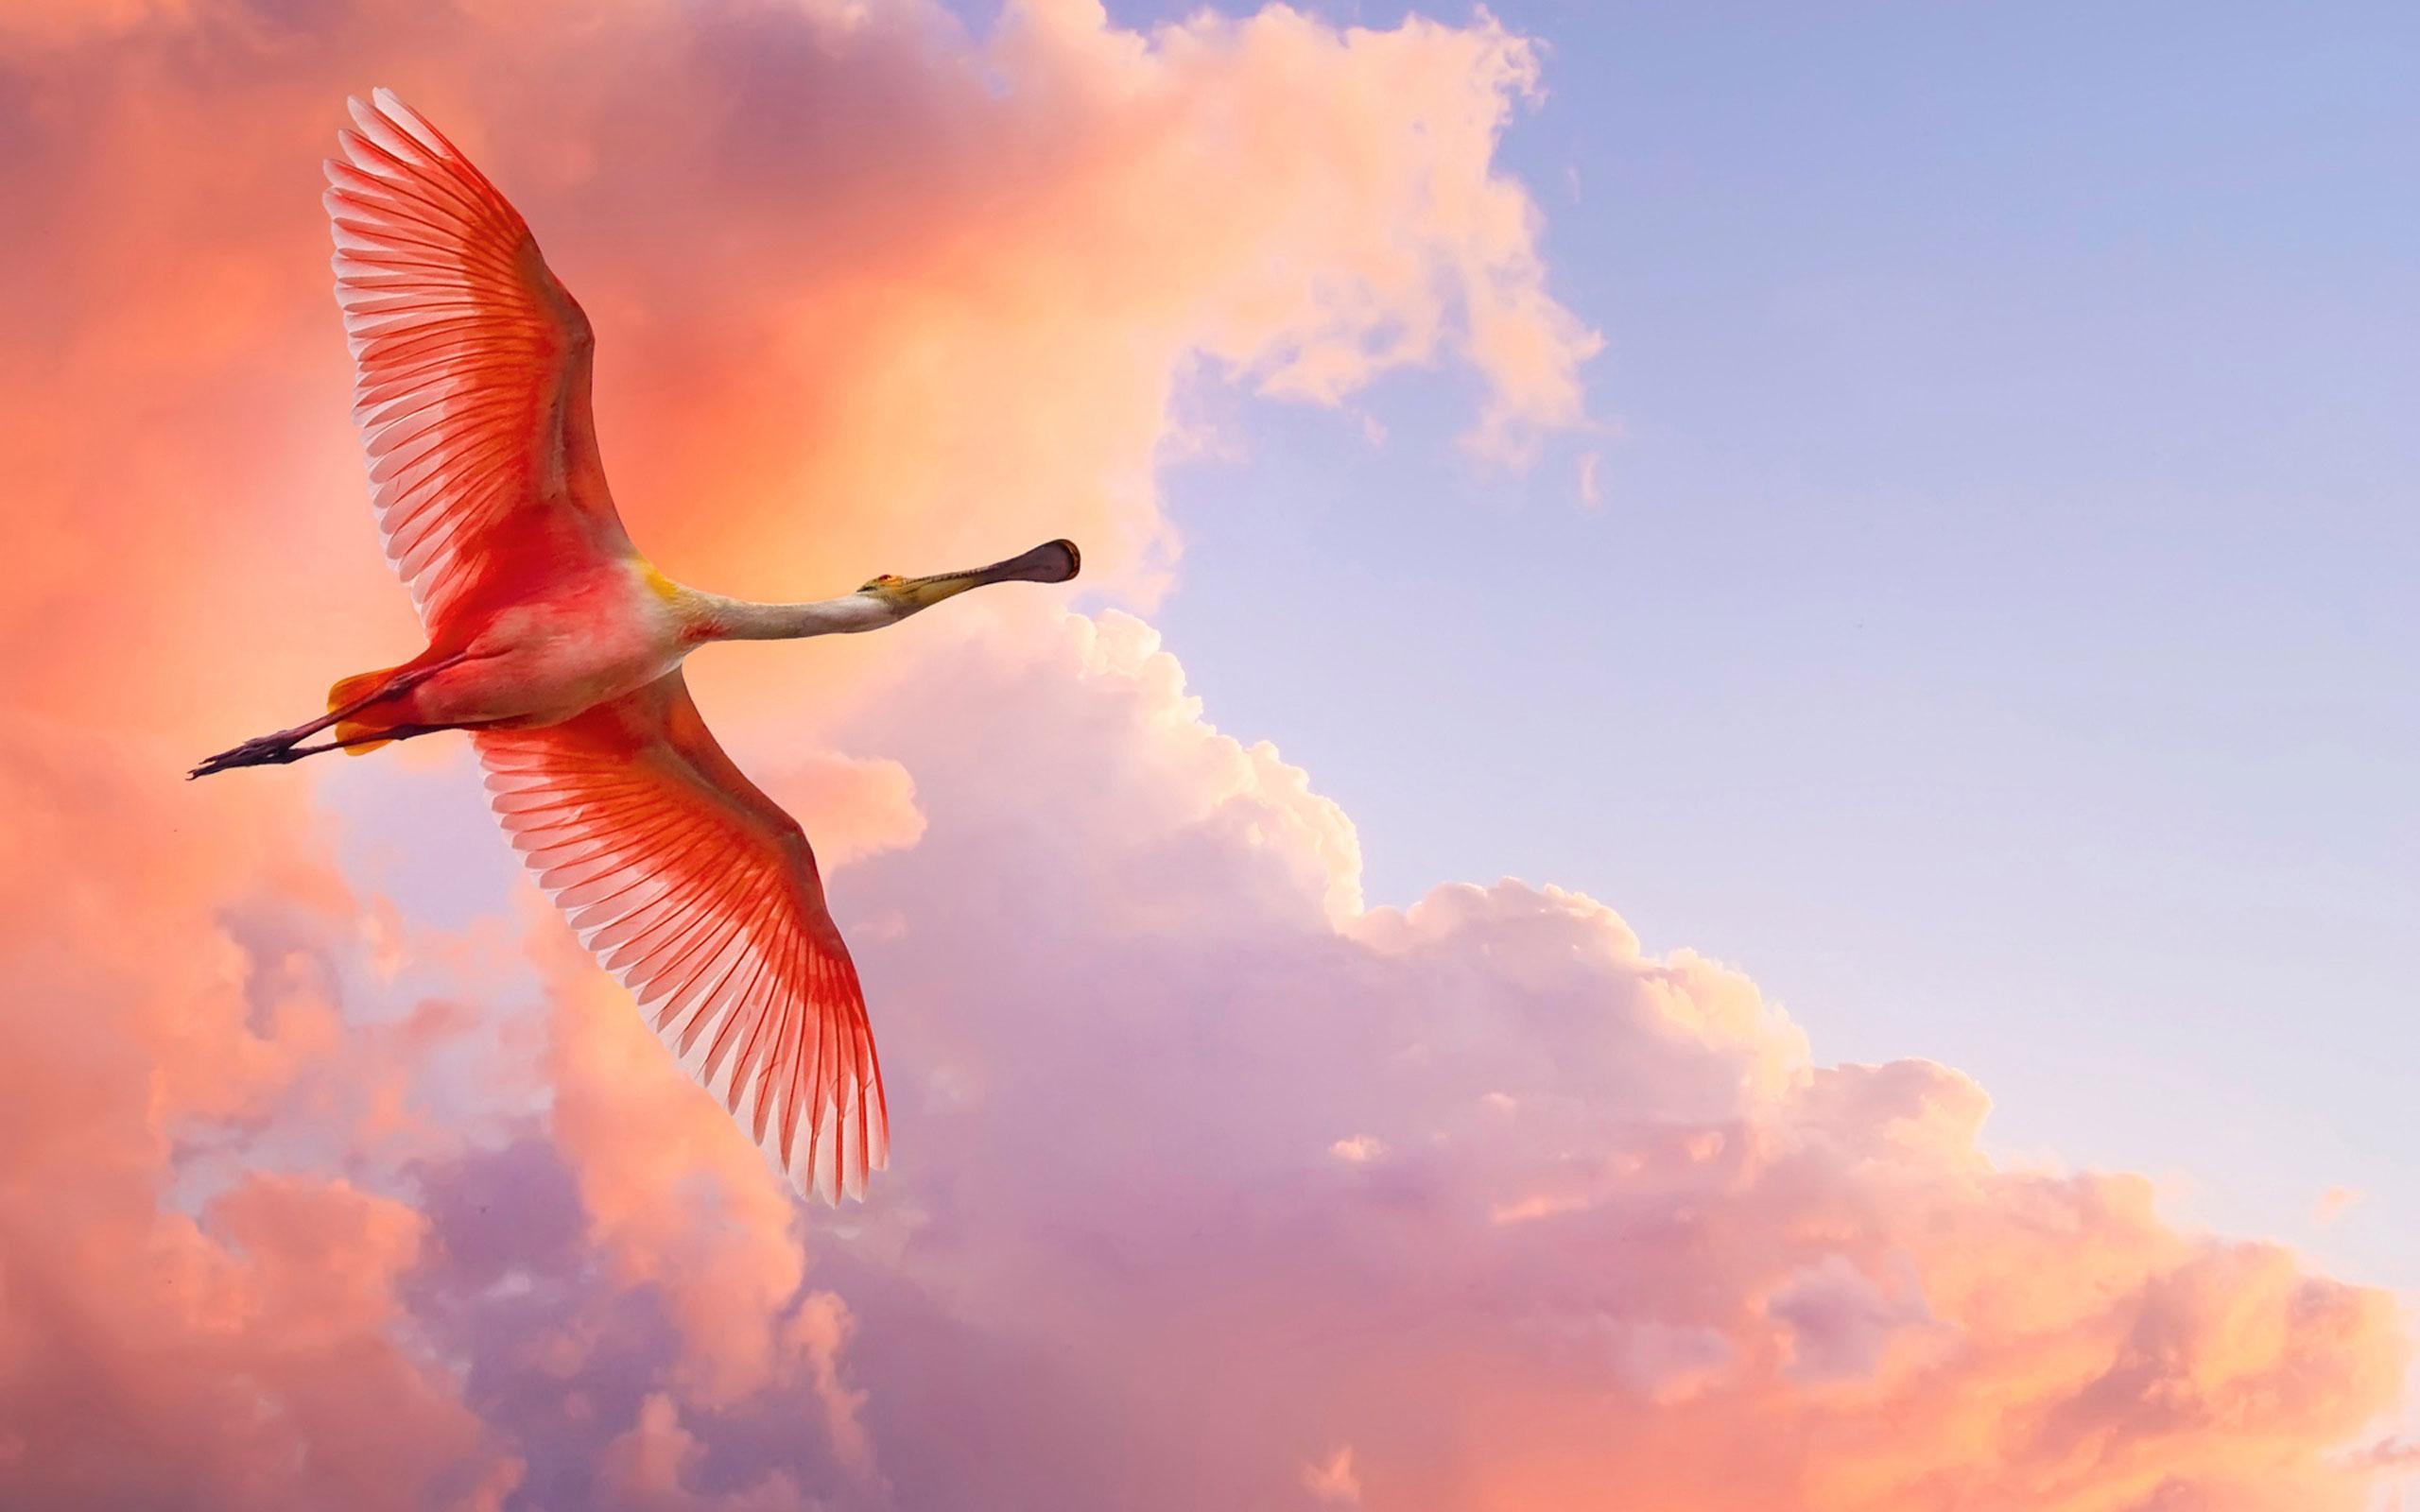 Hình chim hồng hạc bay